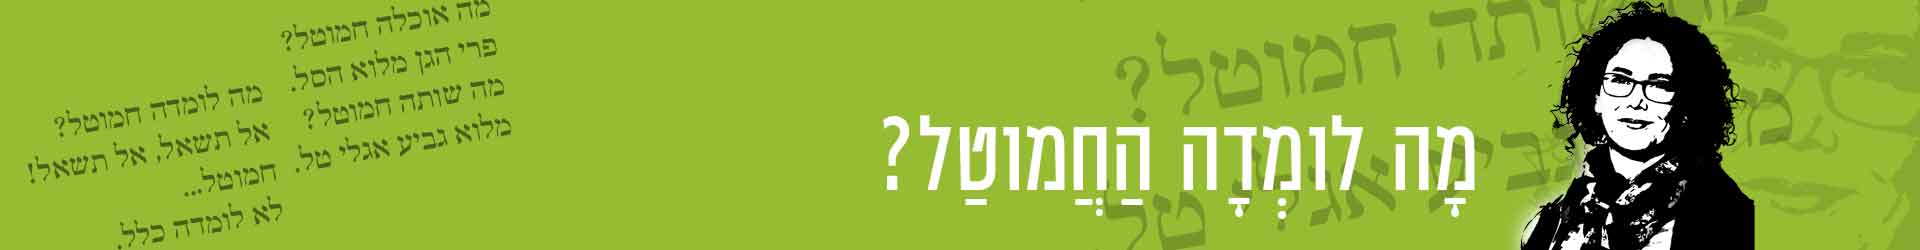 קורס בניה ירוקה מ.א.מגילות ואיגוד ערים יהודה – פגישה2 – ראדון